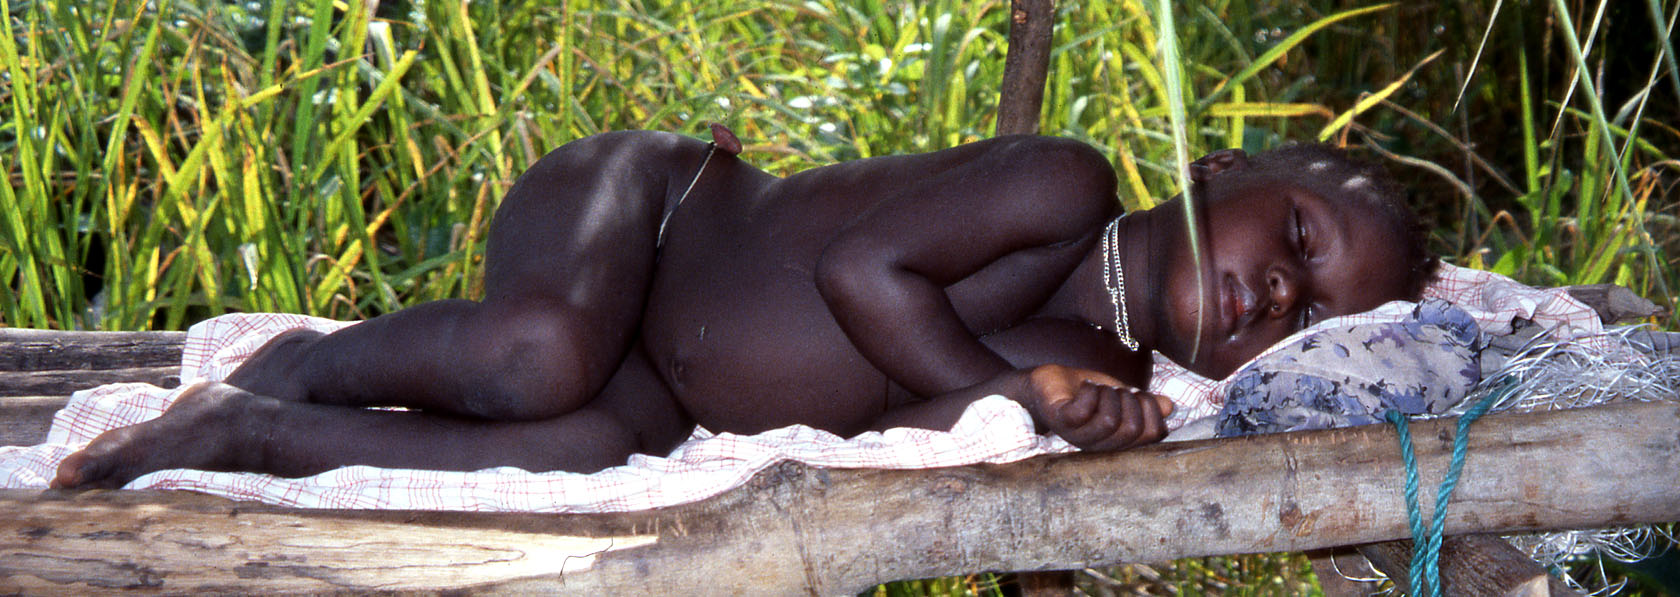 Criança adormecida numa cama no meio de um campo de arroz